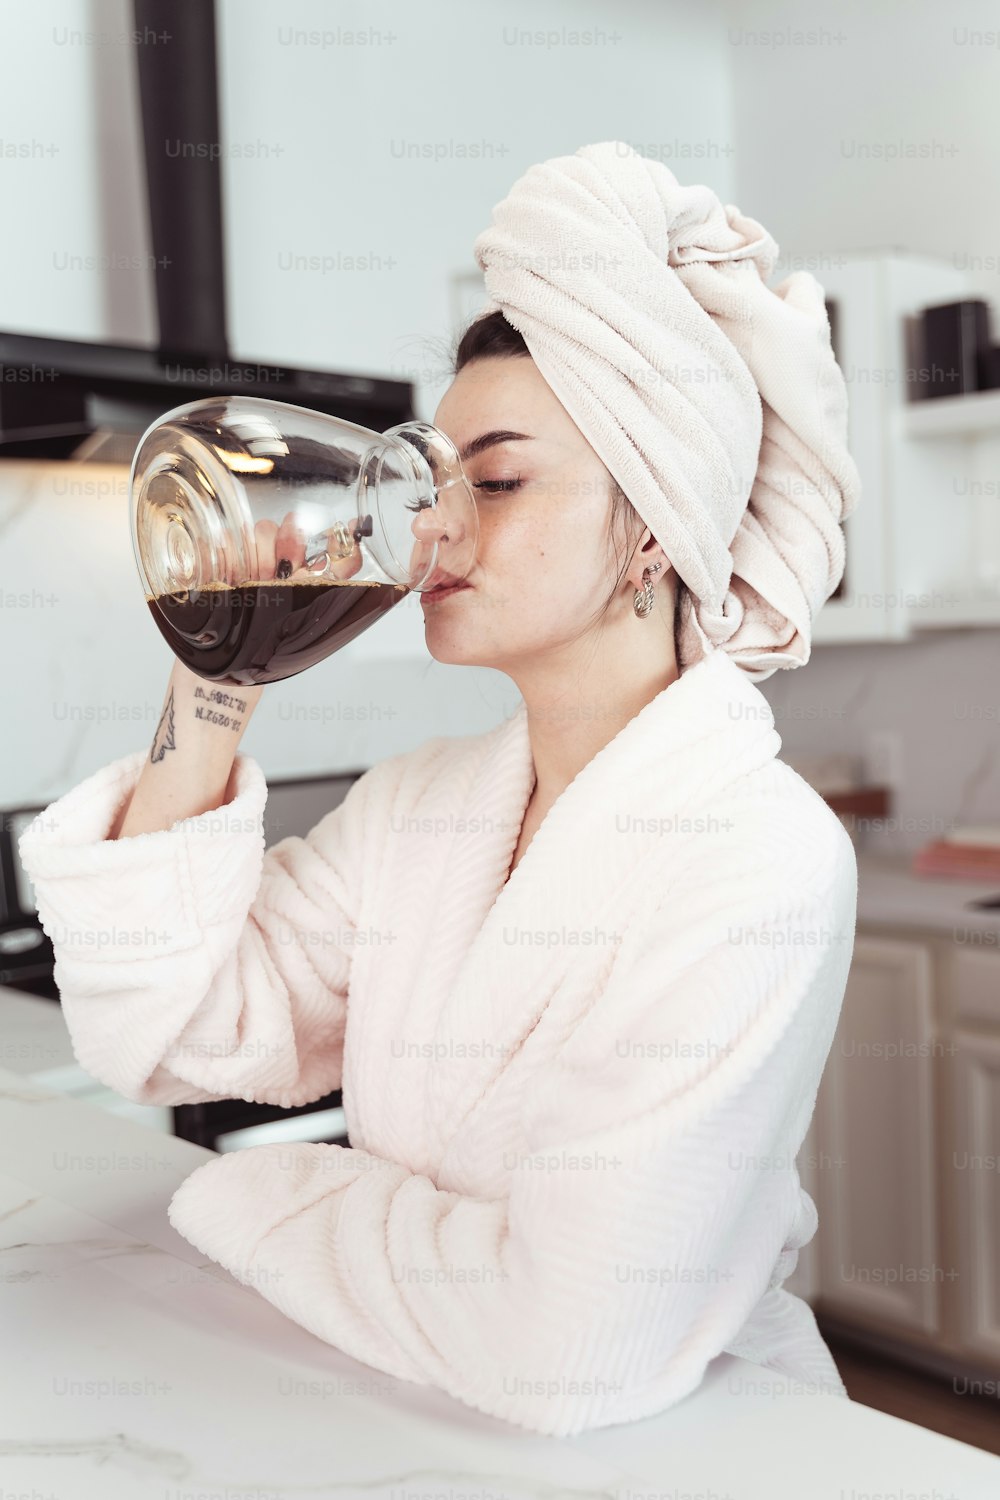 una mujer con una toalla en la cabeza bebiendo de una copa de vino